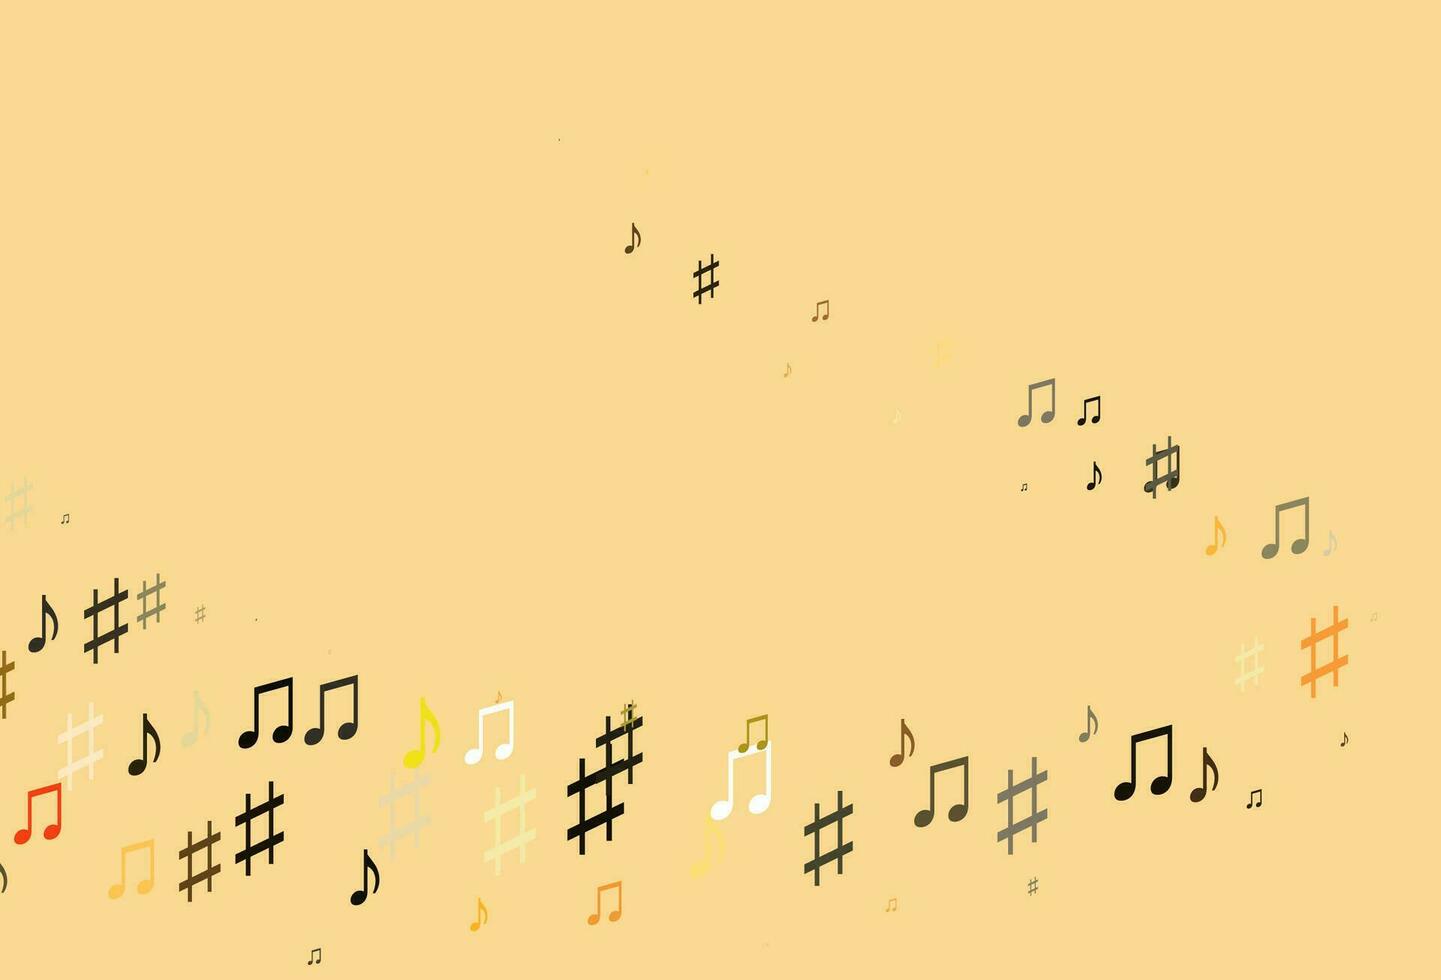 Fondo de vector naranja claro con símbolos musicales.